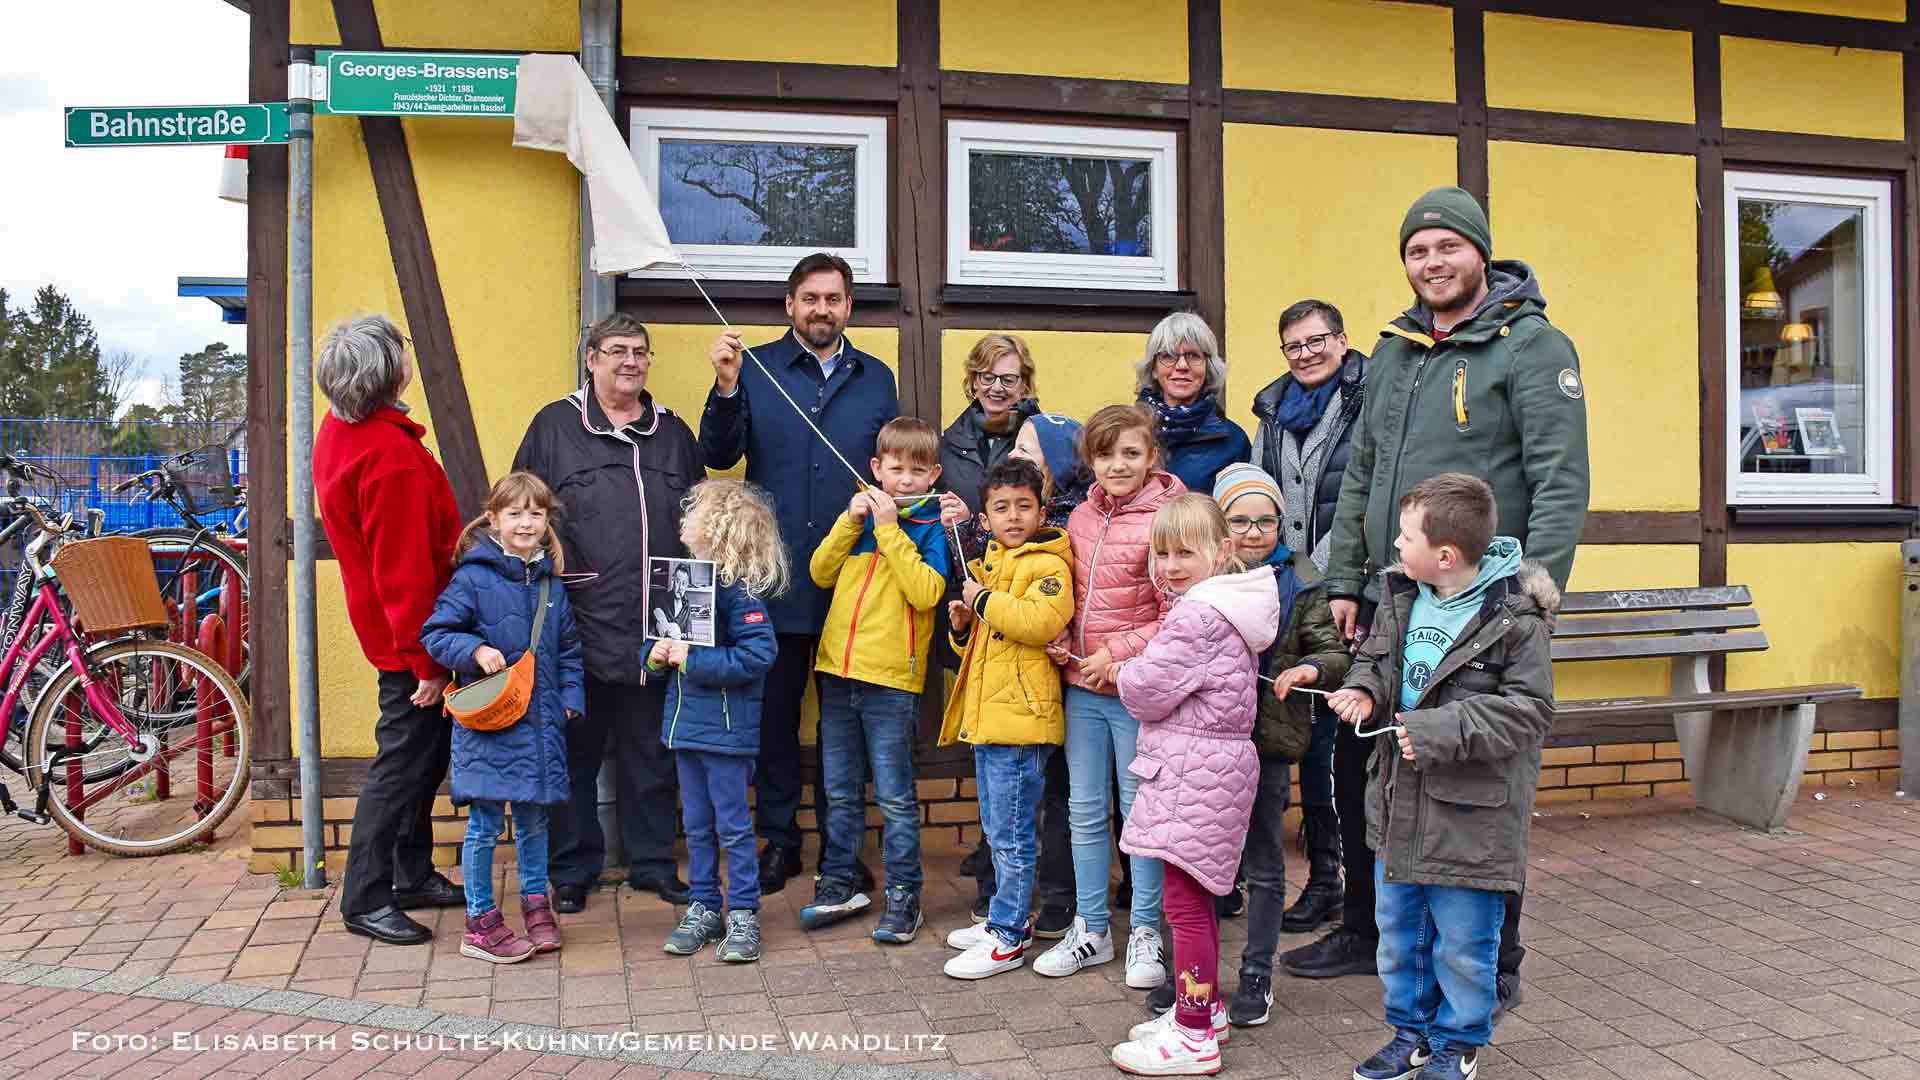 26 Plätze und Straßen erhalten in Wandlitz Namens-Zusatzschilder